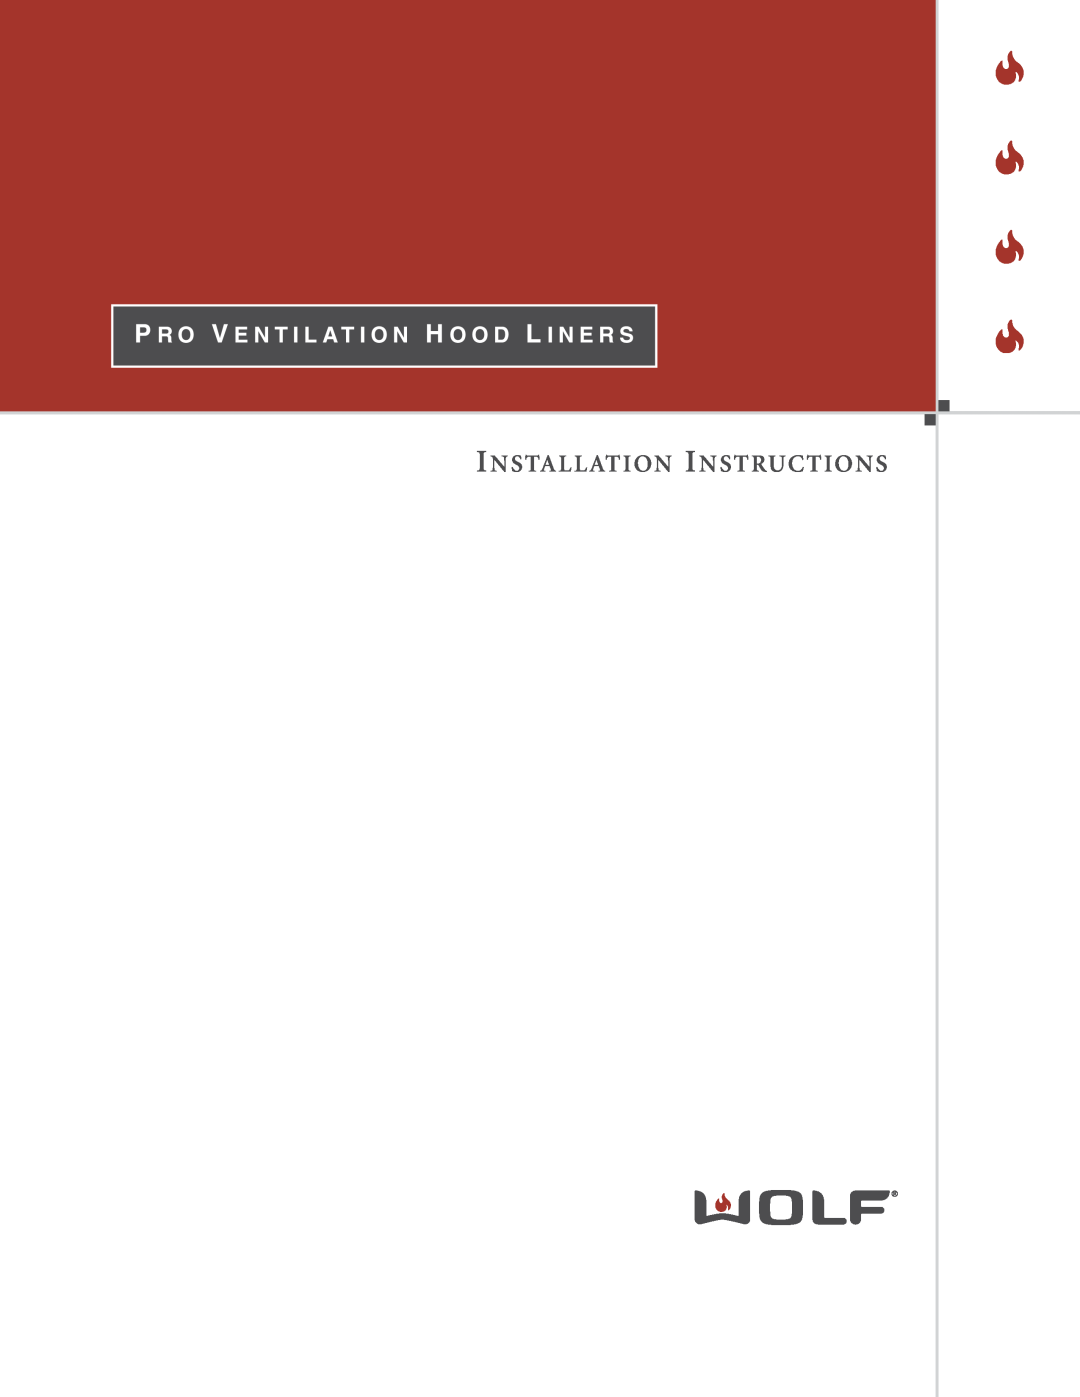 Wolf Appliance Company L342212, L582212, L522212, L402212, L462212 installation instructions Installation Instructions 